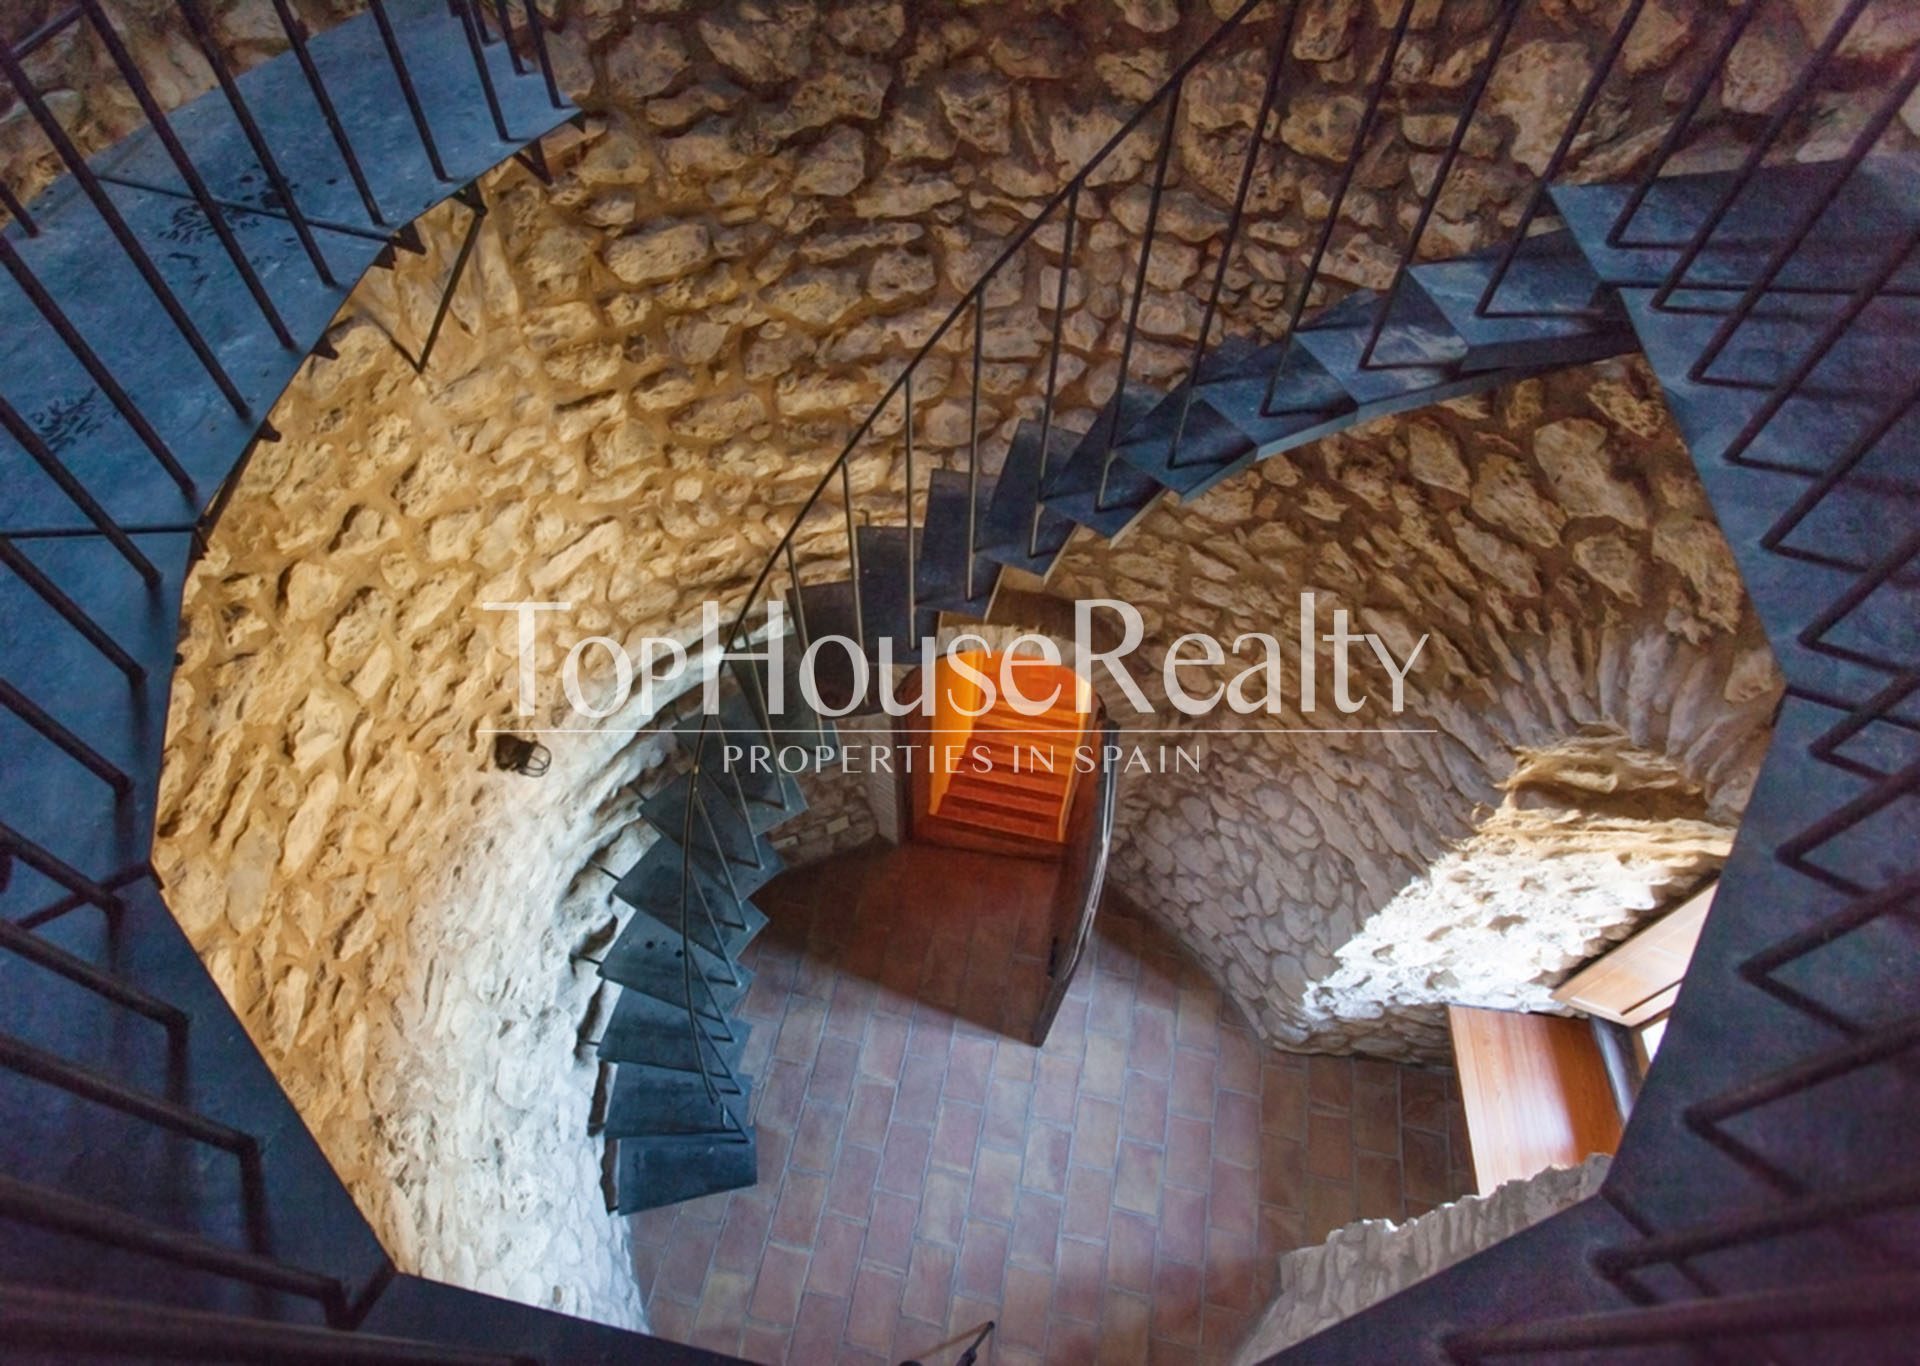 Дом с историей и потрясающей природой вокруг, вблизи Барселоны